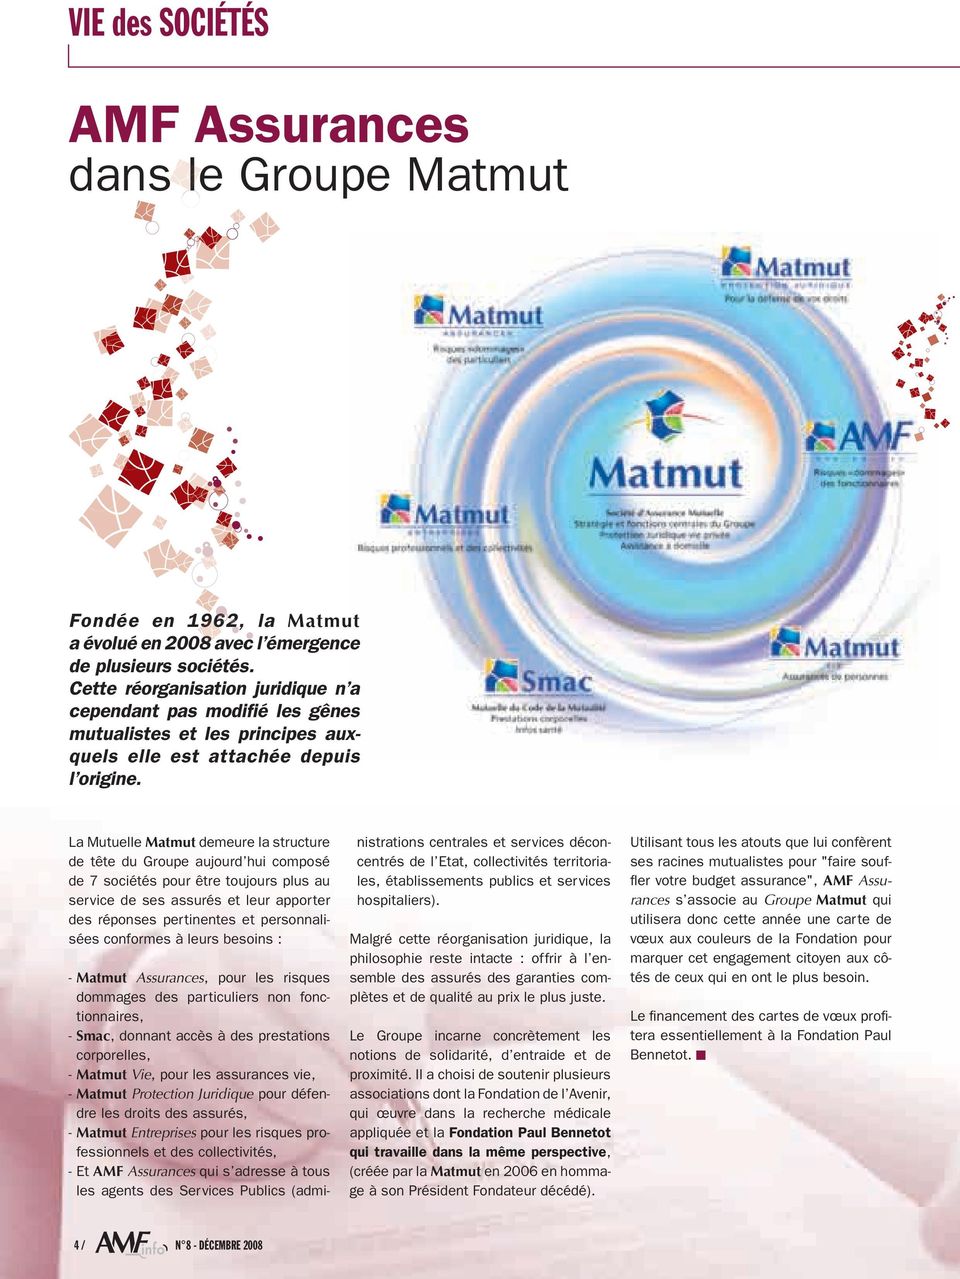 La Mutuelle Matmut demeure la structure de tête du Groupe aujourd hui composé de 7 sociétés pour être toujours plus au service de ses assurés et leur apporter des réponses pertinentes et